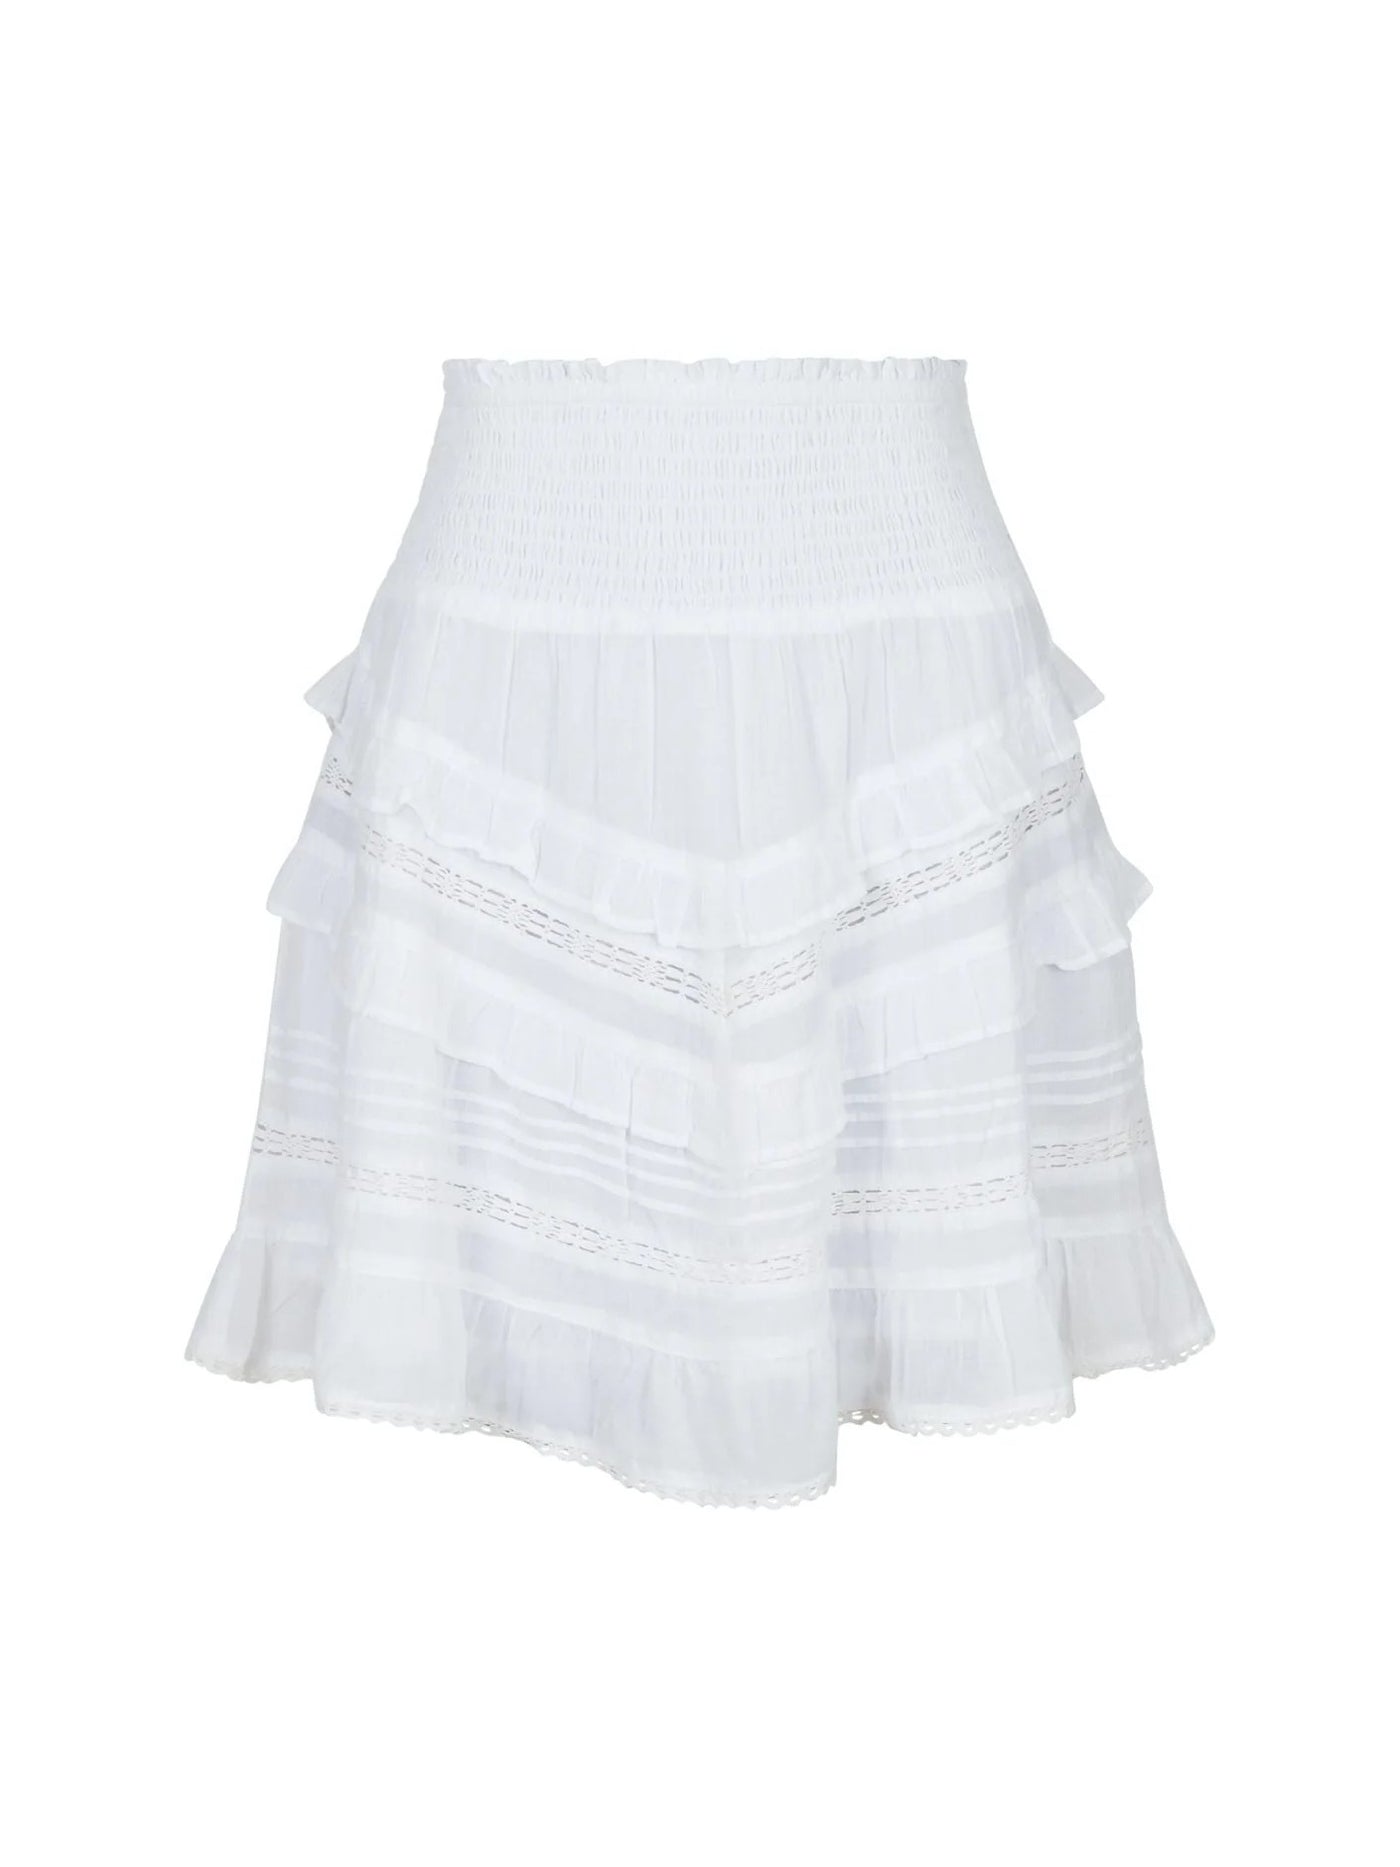 Donna S Voile Skirt White